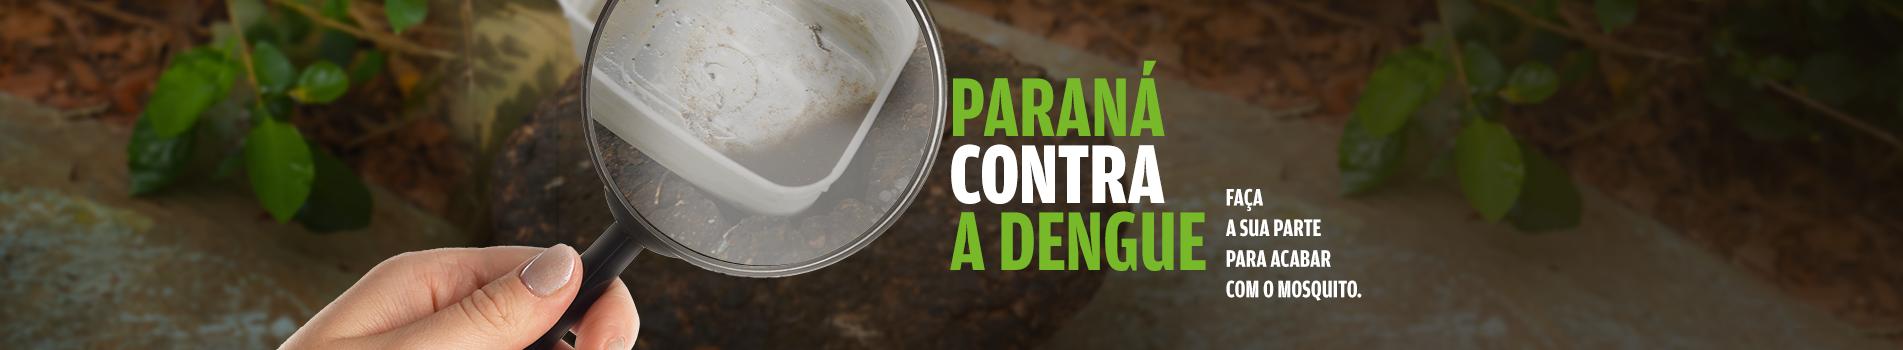 Paraná contra a Dengue - Faça a sua parte para acabar com o mosquito